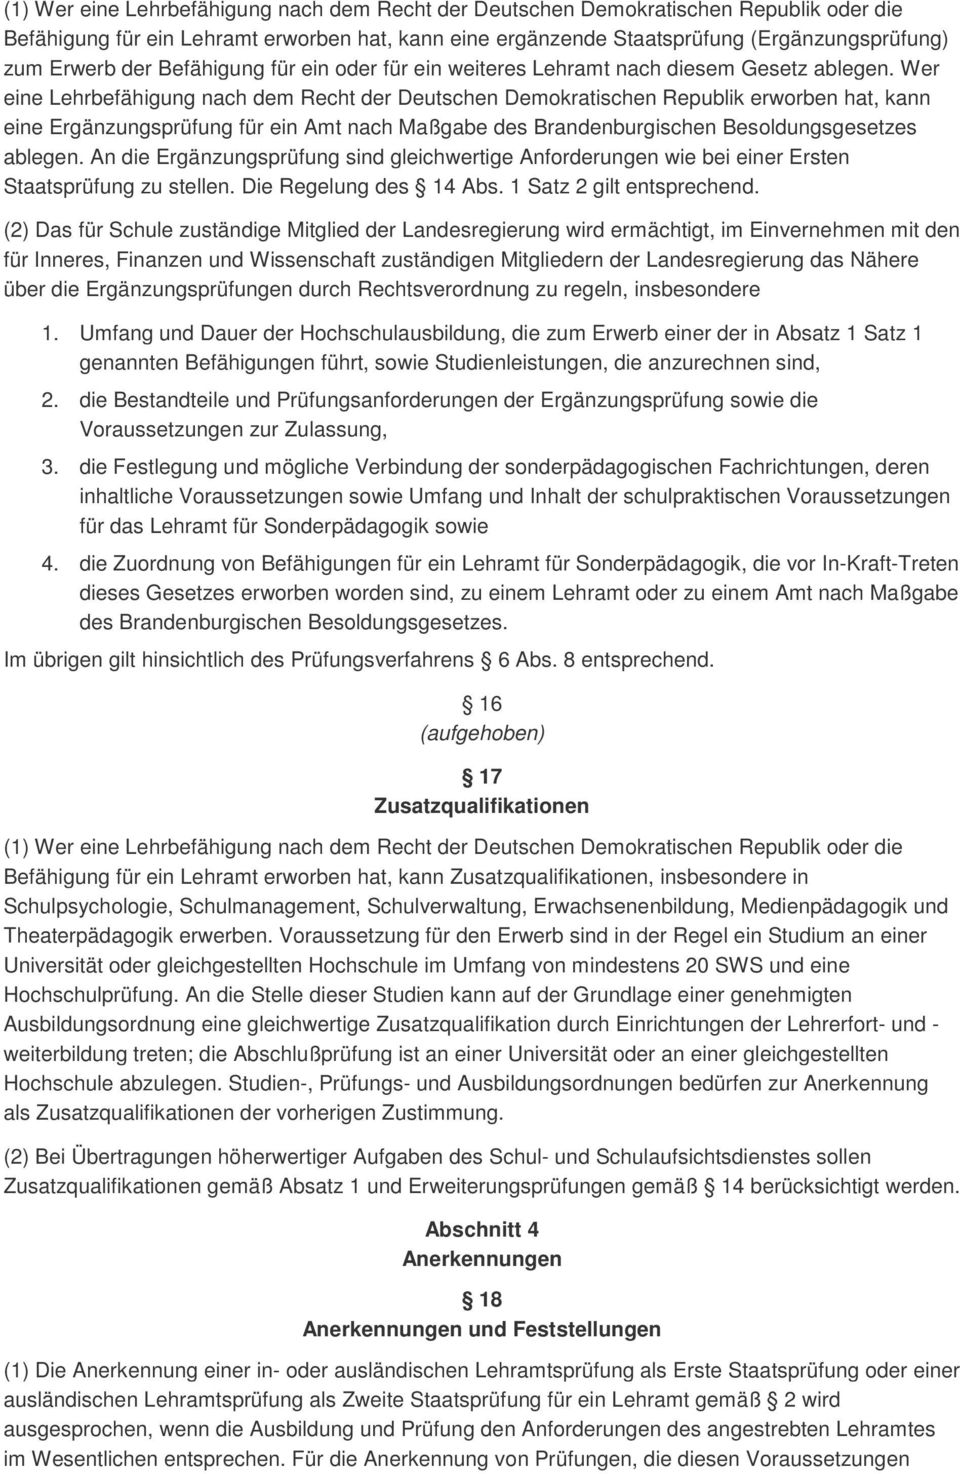 Wer eine Lehrbefähigung nach dem Recht der Deutschen Demokratischen Republik erworben hat, kann eine Ergänzungsprüfung für ein Amt nach Maßgabe des Brandenburgischen Besoldungsgesetzes ablegen.